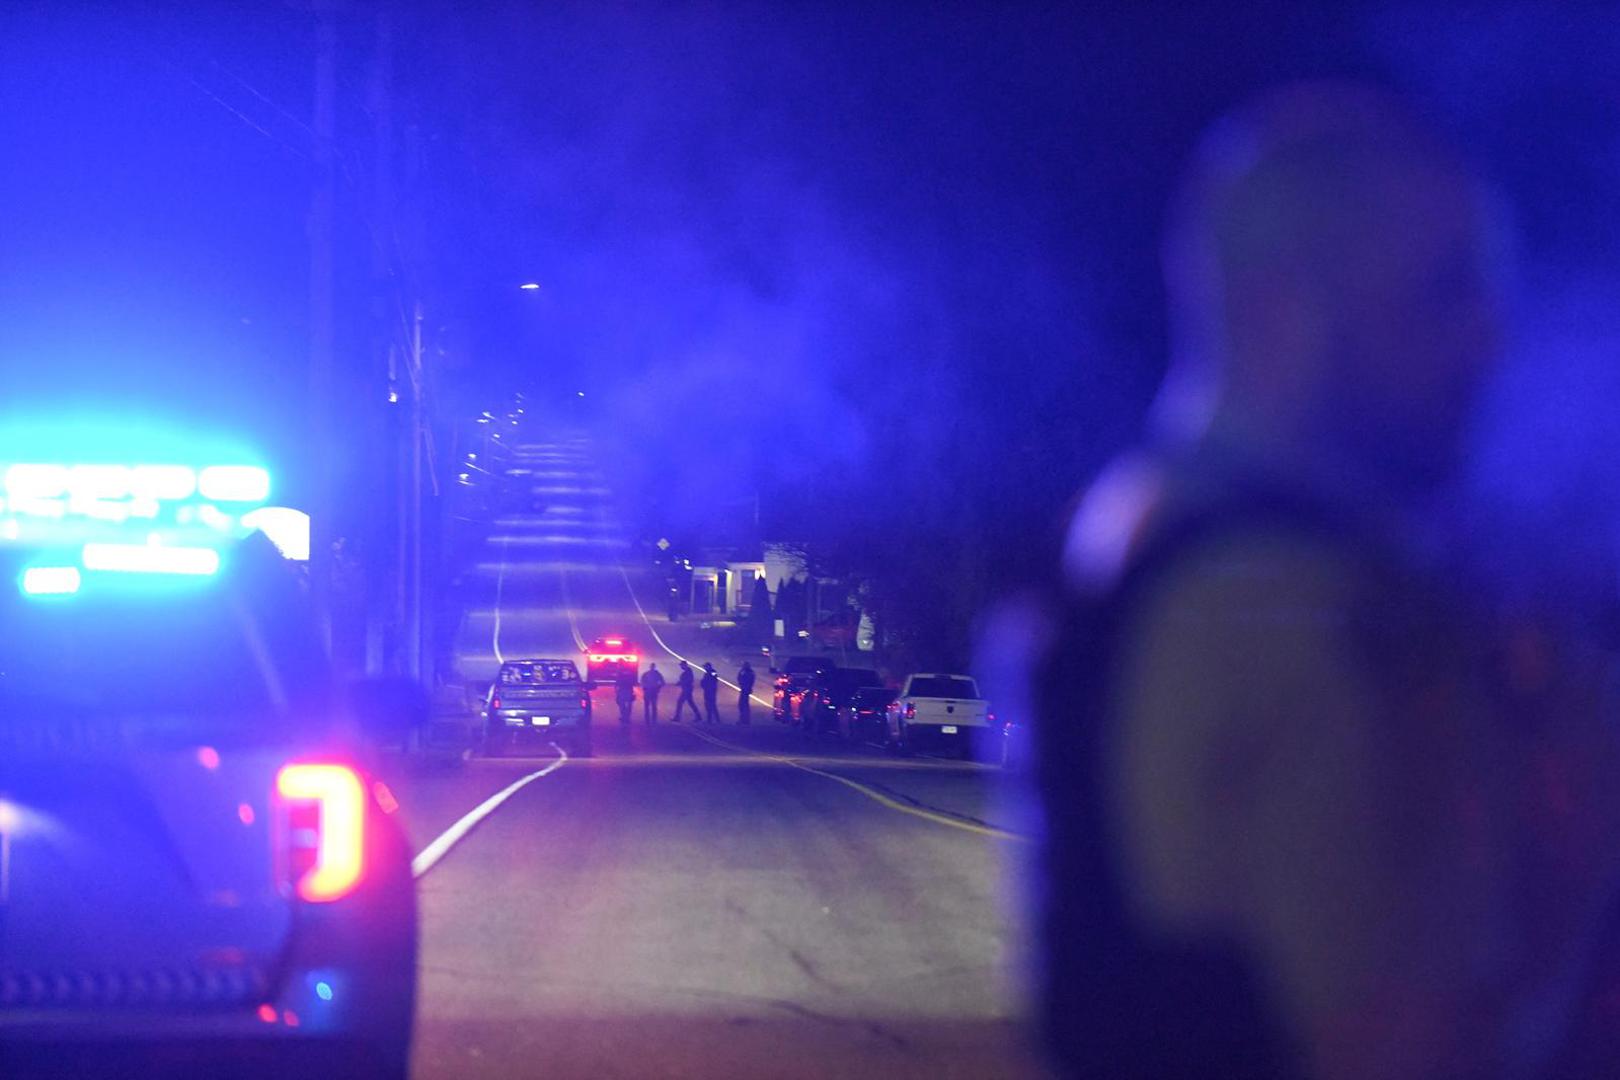 Policija je objavila kako je u gradu Lisabonu pronađeno vozilo muškarca koje je povezano s pucnjavom.

